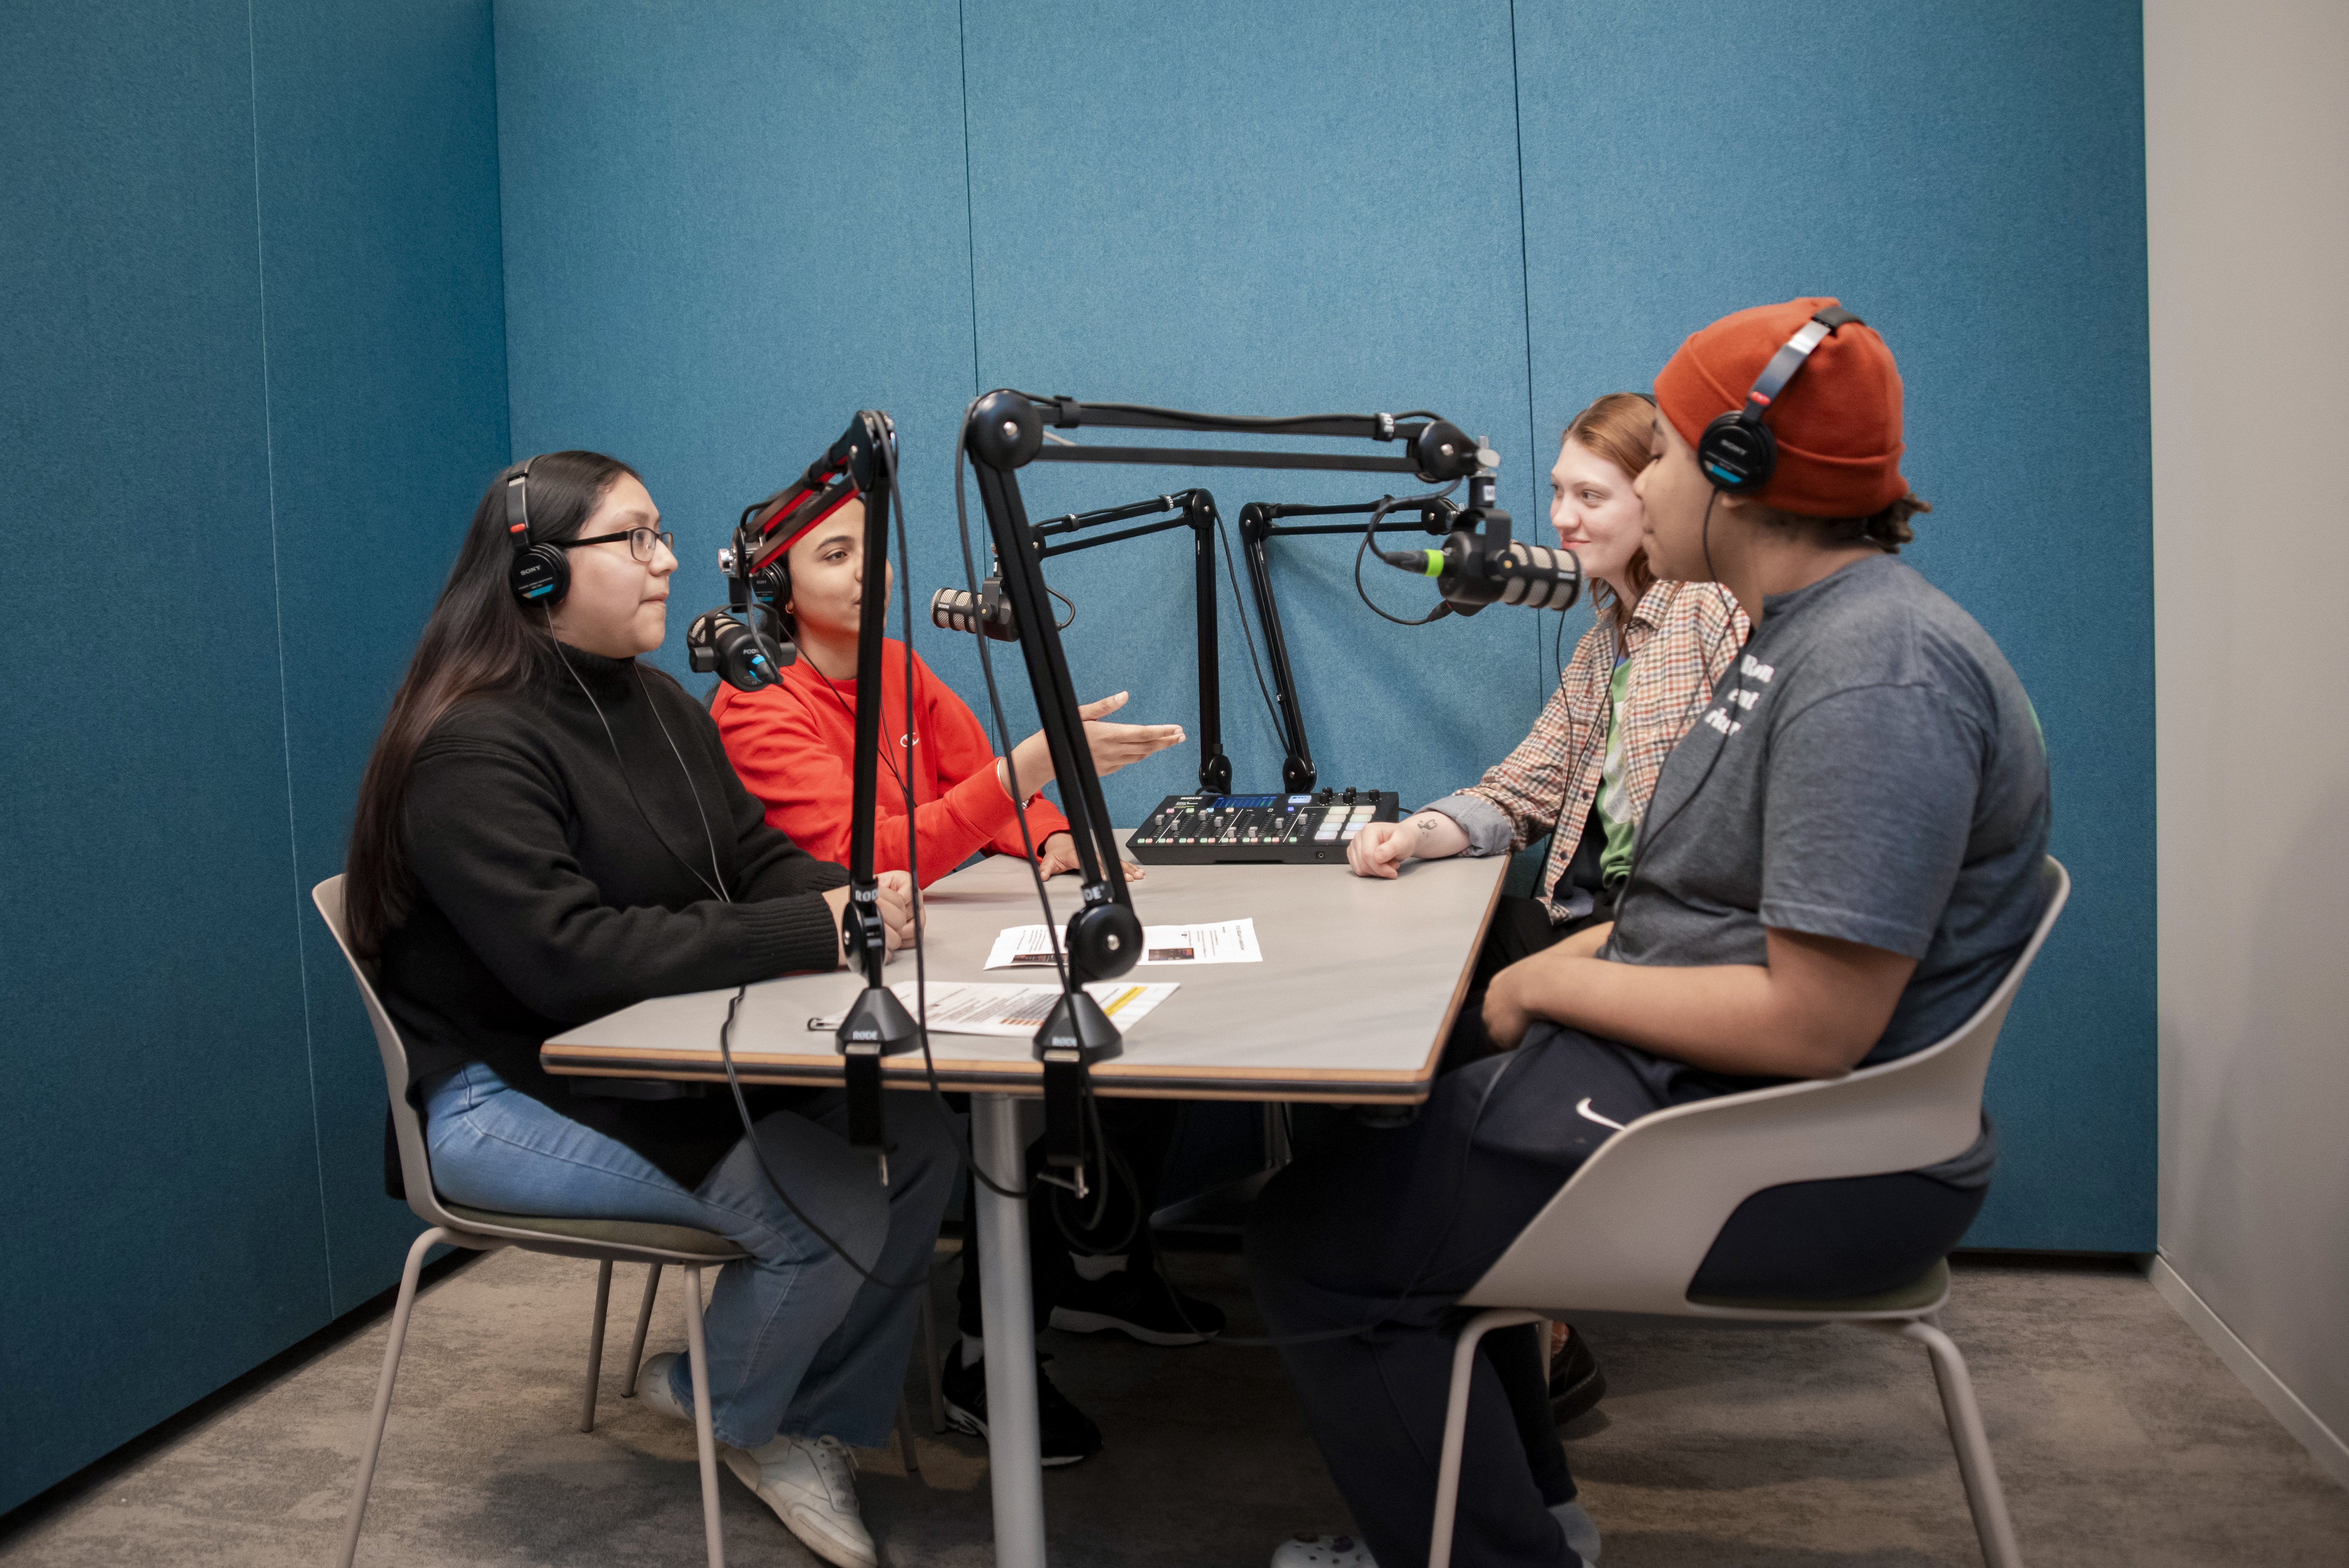 Podcasting station in the Digital Media Hub